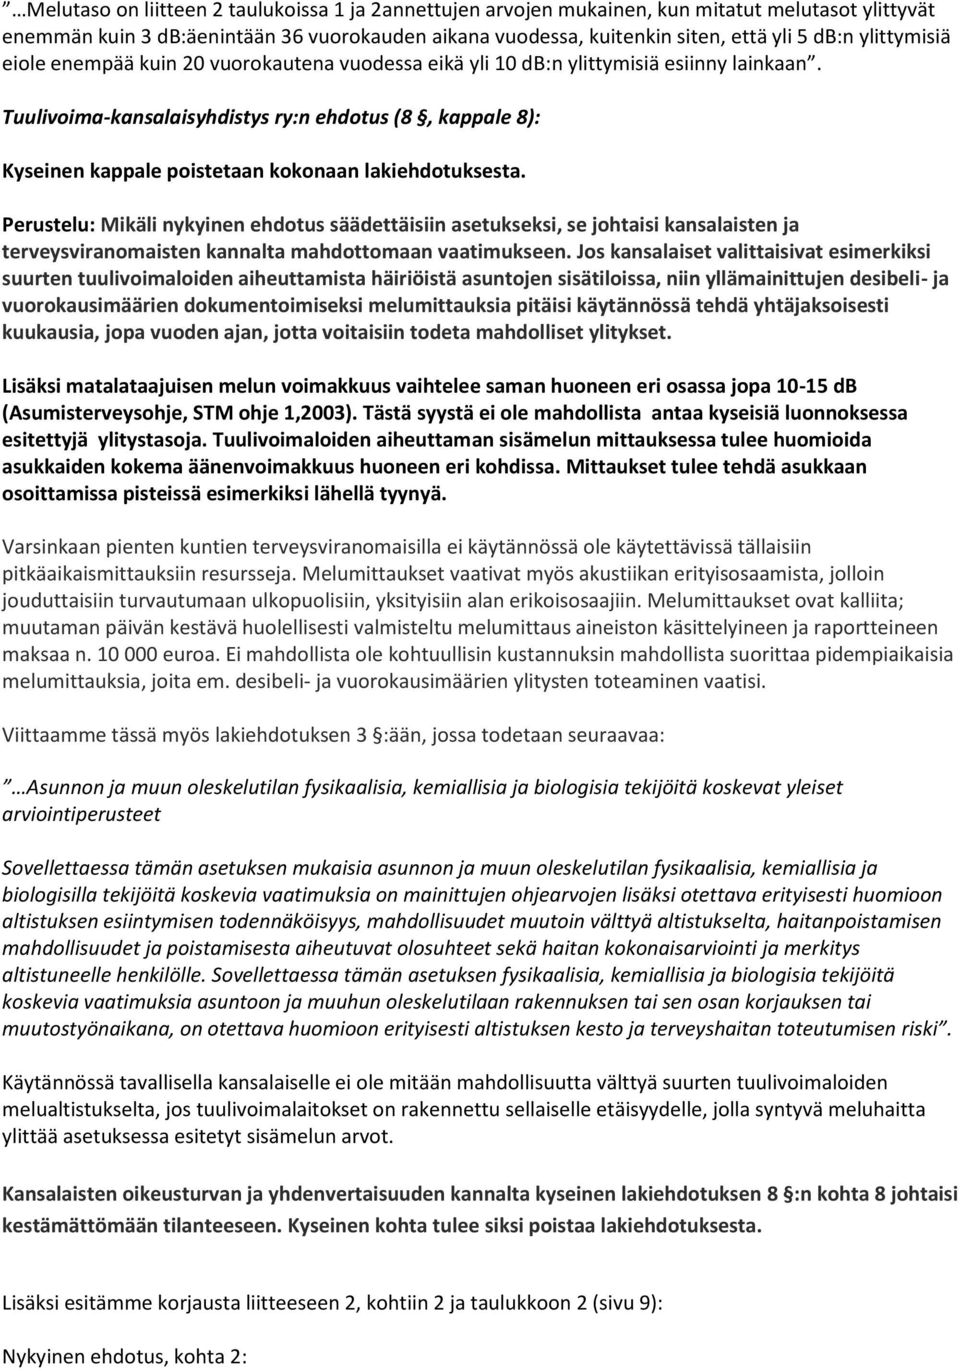 Tuulivoima-kansalaisyhdistys ry:n ehdotus (8, kappale 8): Kyseinen kappale poistetaan kokonaan lakiehdotuksesta.